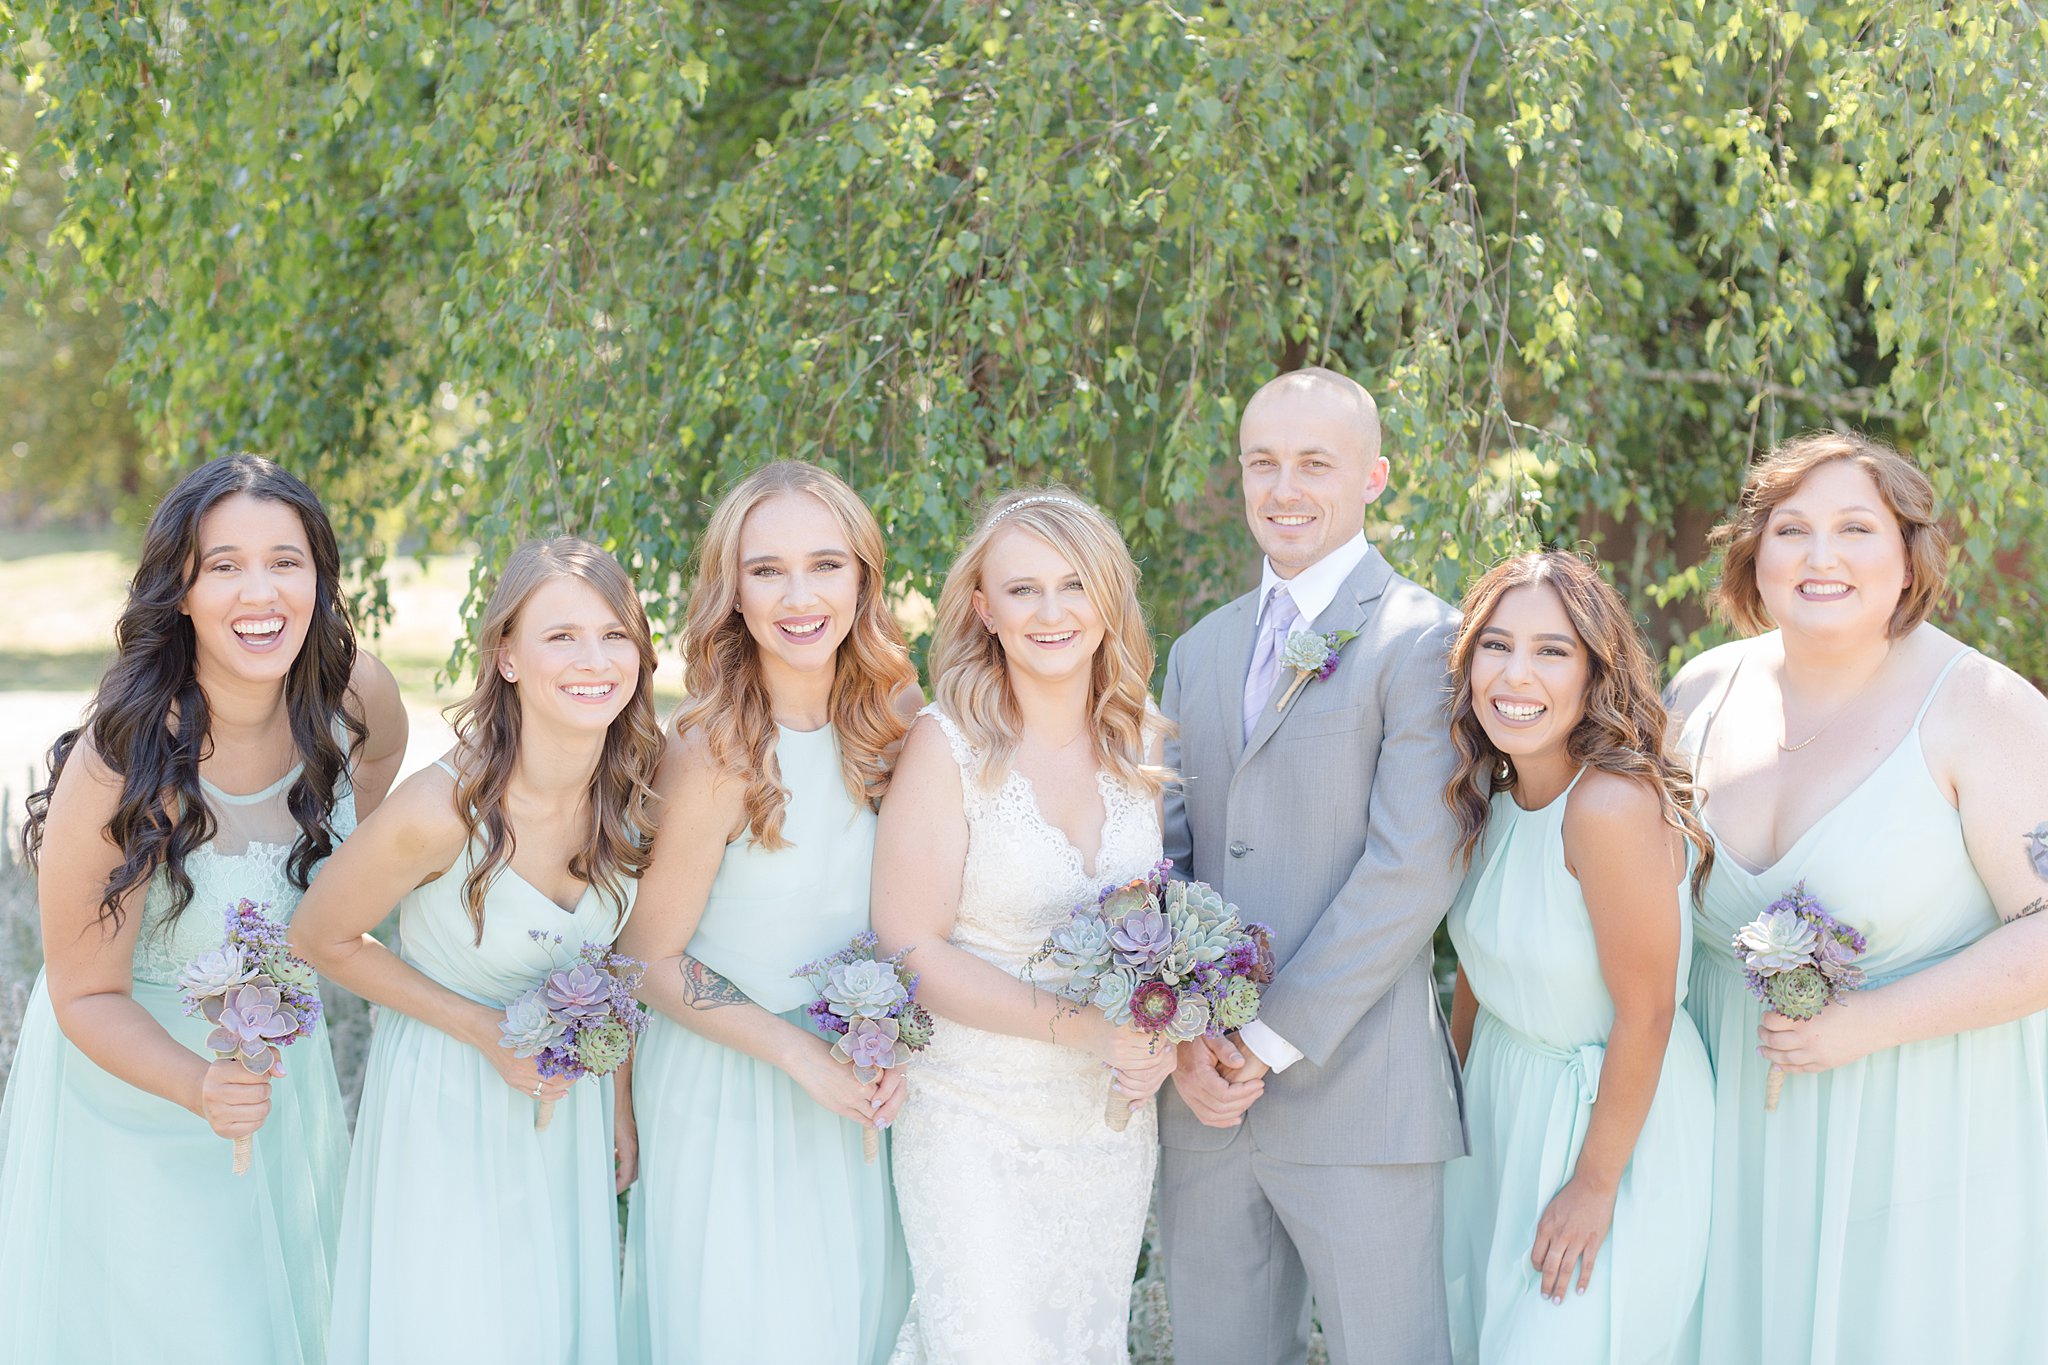 Mint bridesmaids dresses Succlunet bridesmaid bouquet | Oregon Photographer | Kelby Maria Photography